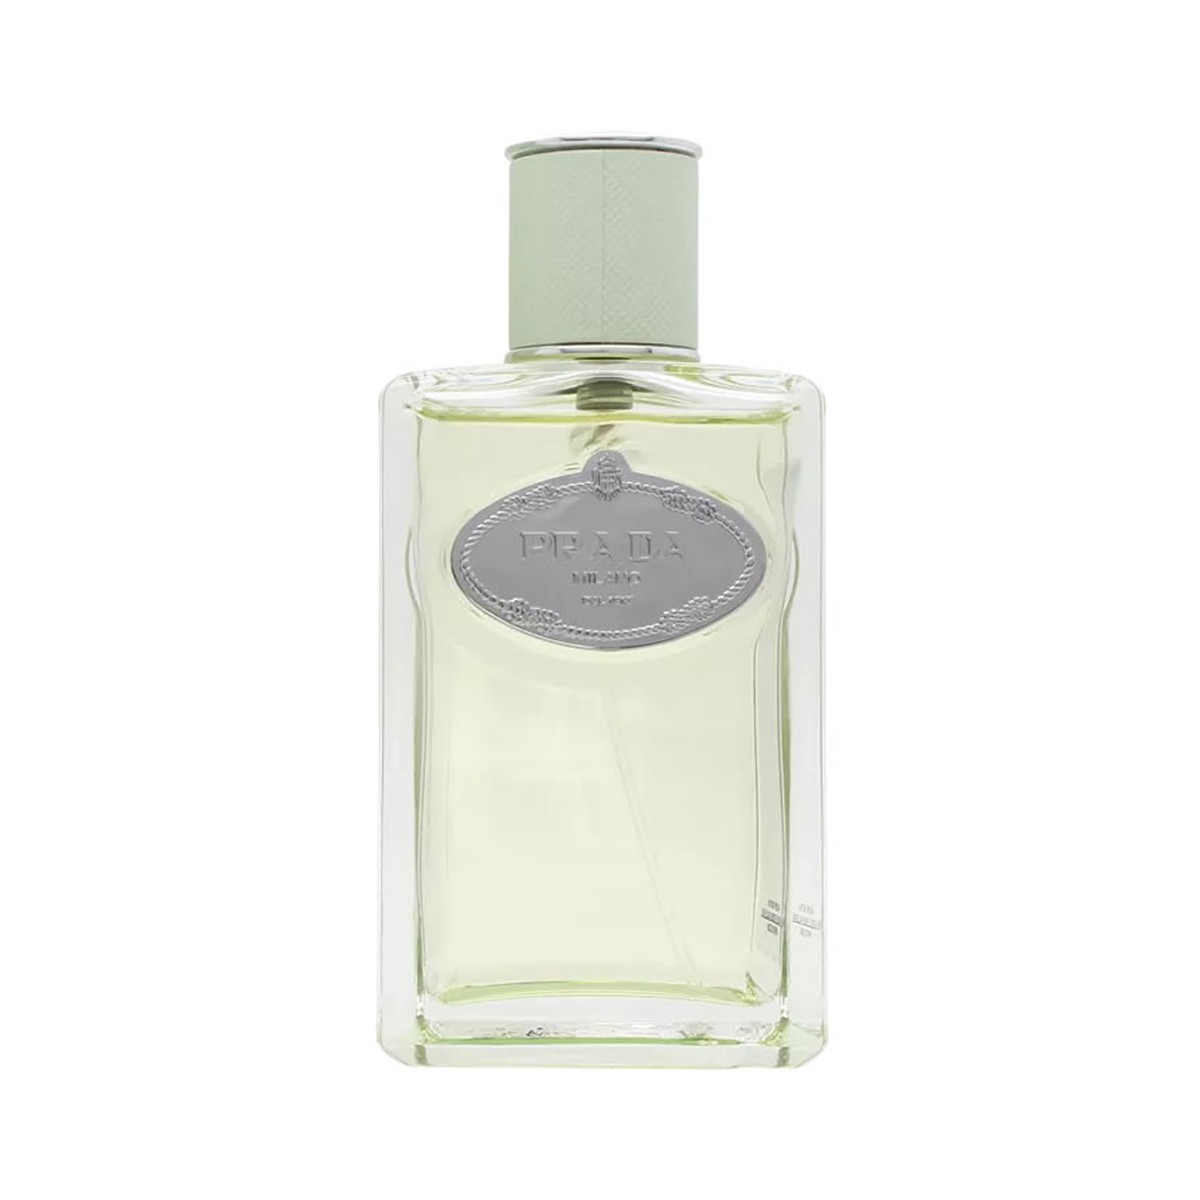 les infusion de prada milano iris prada perfume feminino eau de parfum 30ml  - C&A